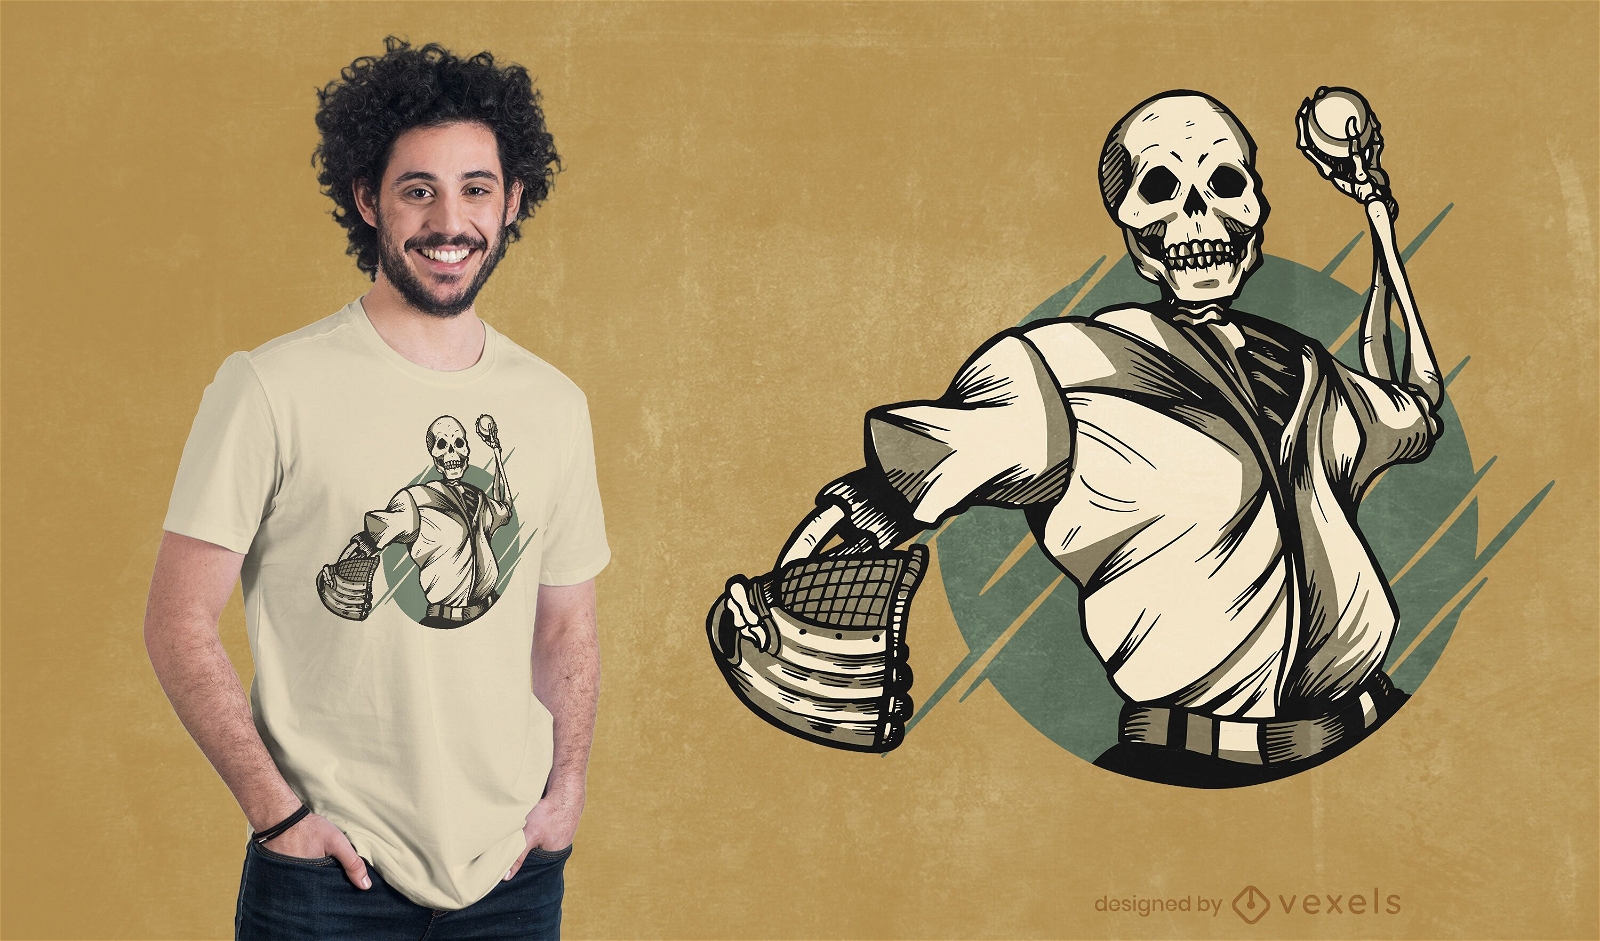 Baseball skeleton t-shirt design